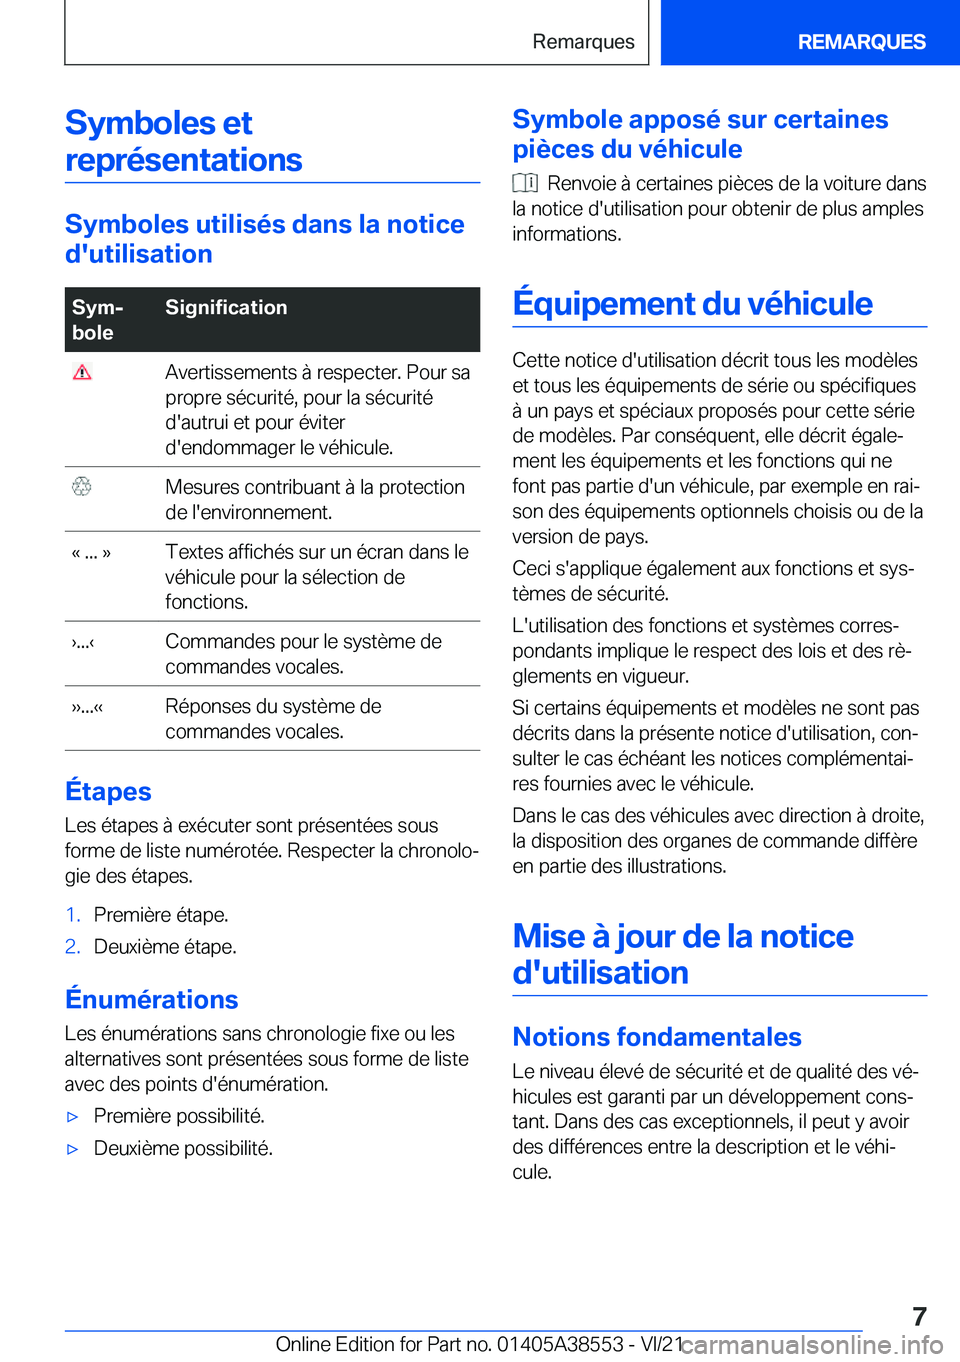 BMW X6 2022  Notices Demploi (in French) �S�y�m�b�o�l�e�s��e�t�r�e�p�r�é�s�e�n�t�a�t�i�o�n�s
�S�y�m�b�o�l�e�s��u�t�i�l�i�s�é�s��d�a�n�s��l�a��n�o�t�i�c�e
�d�'�u�t�i�l�i�s�a�t�i�o�n
�S�y�mj
�b�o�l�e�S�i�g�n�i�f�i�c�a�t�i�o�n��A�v